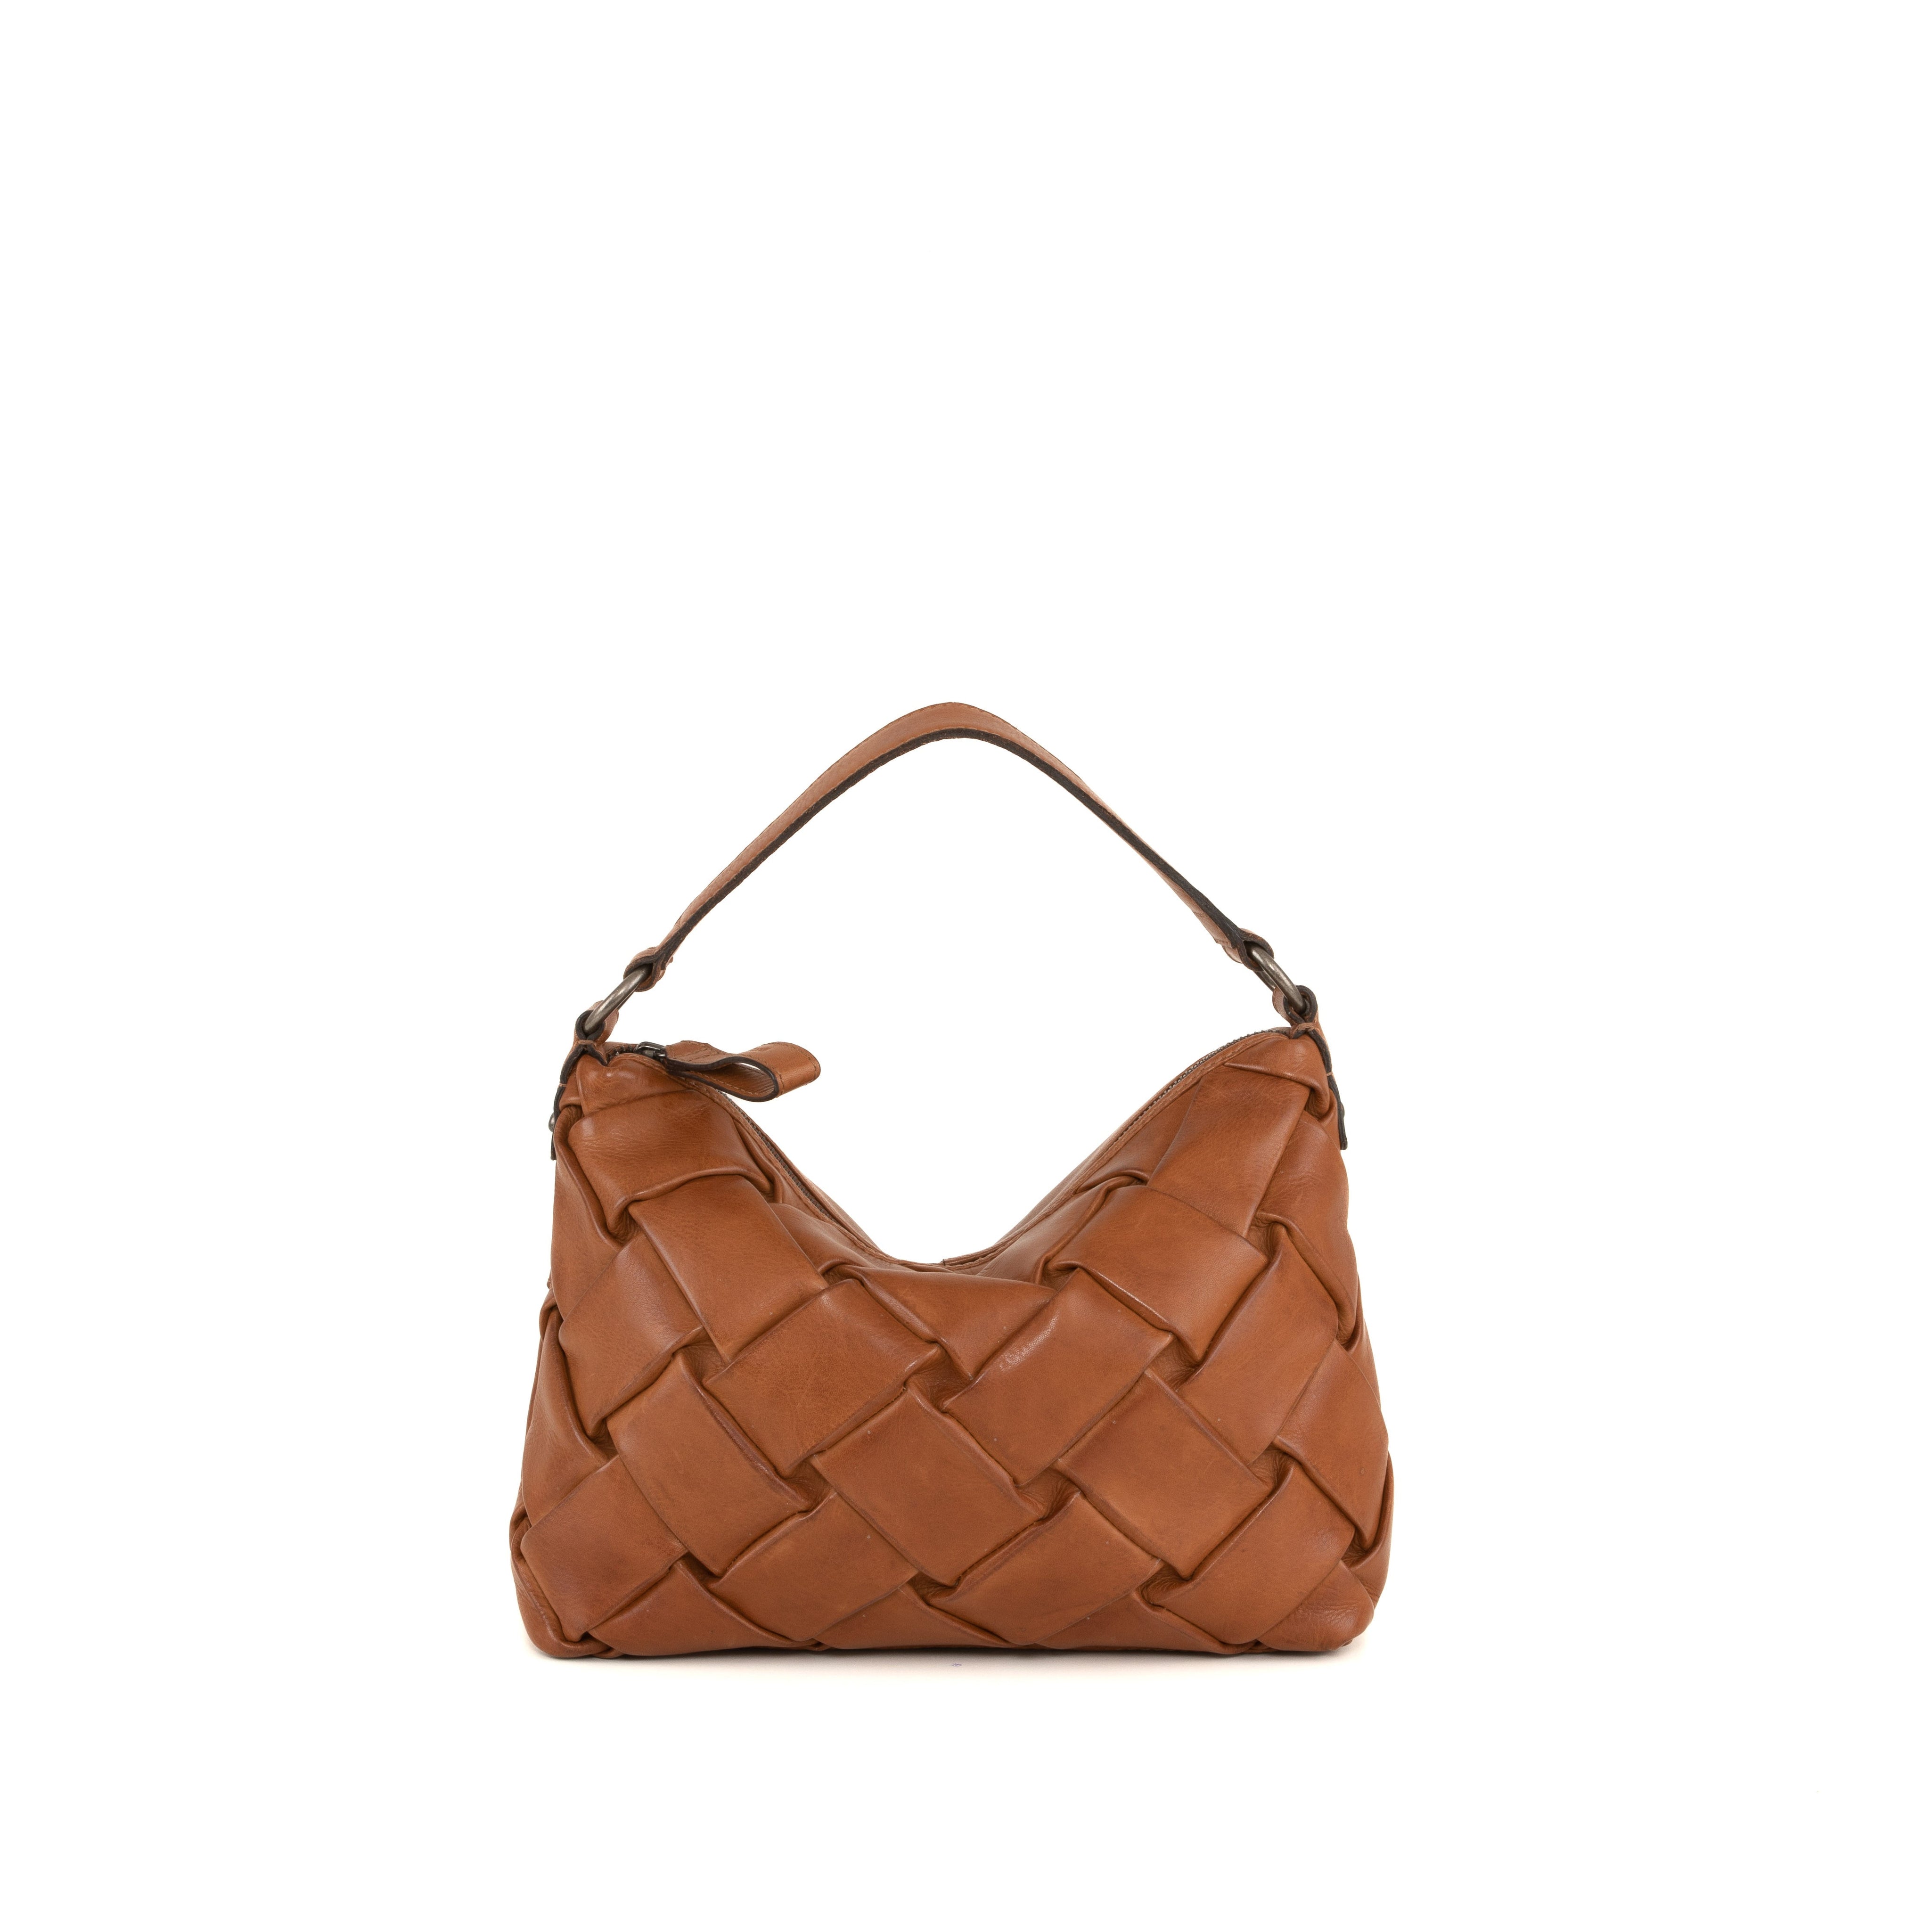 SAMUYA Classic Brown Leather Shoulder Bag